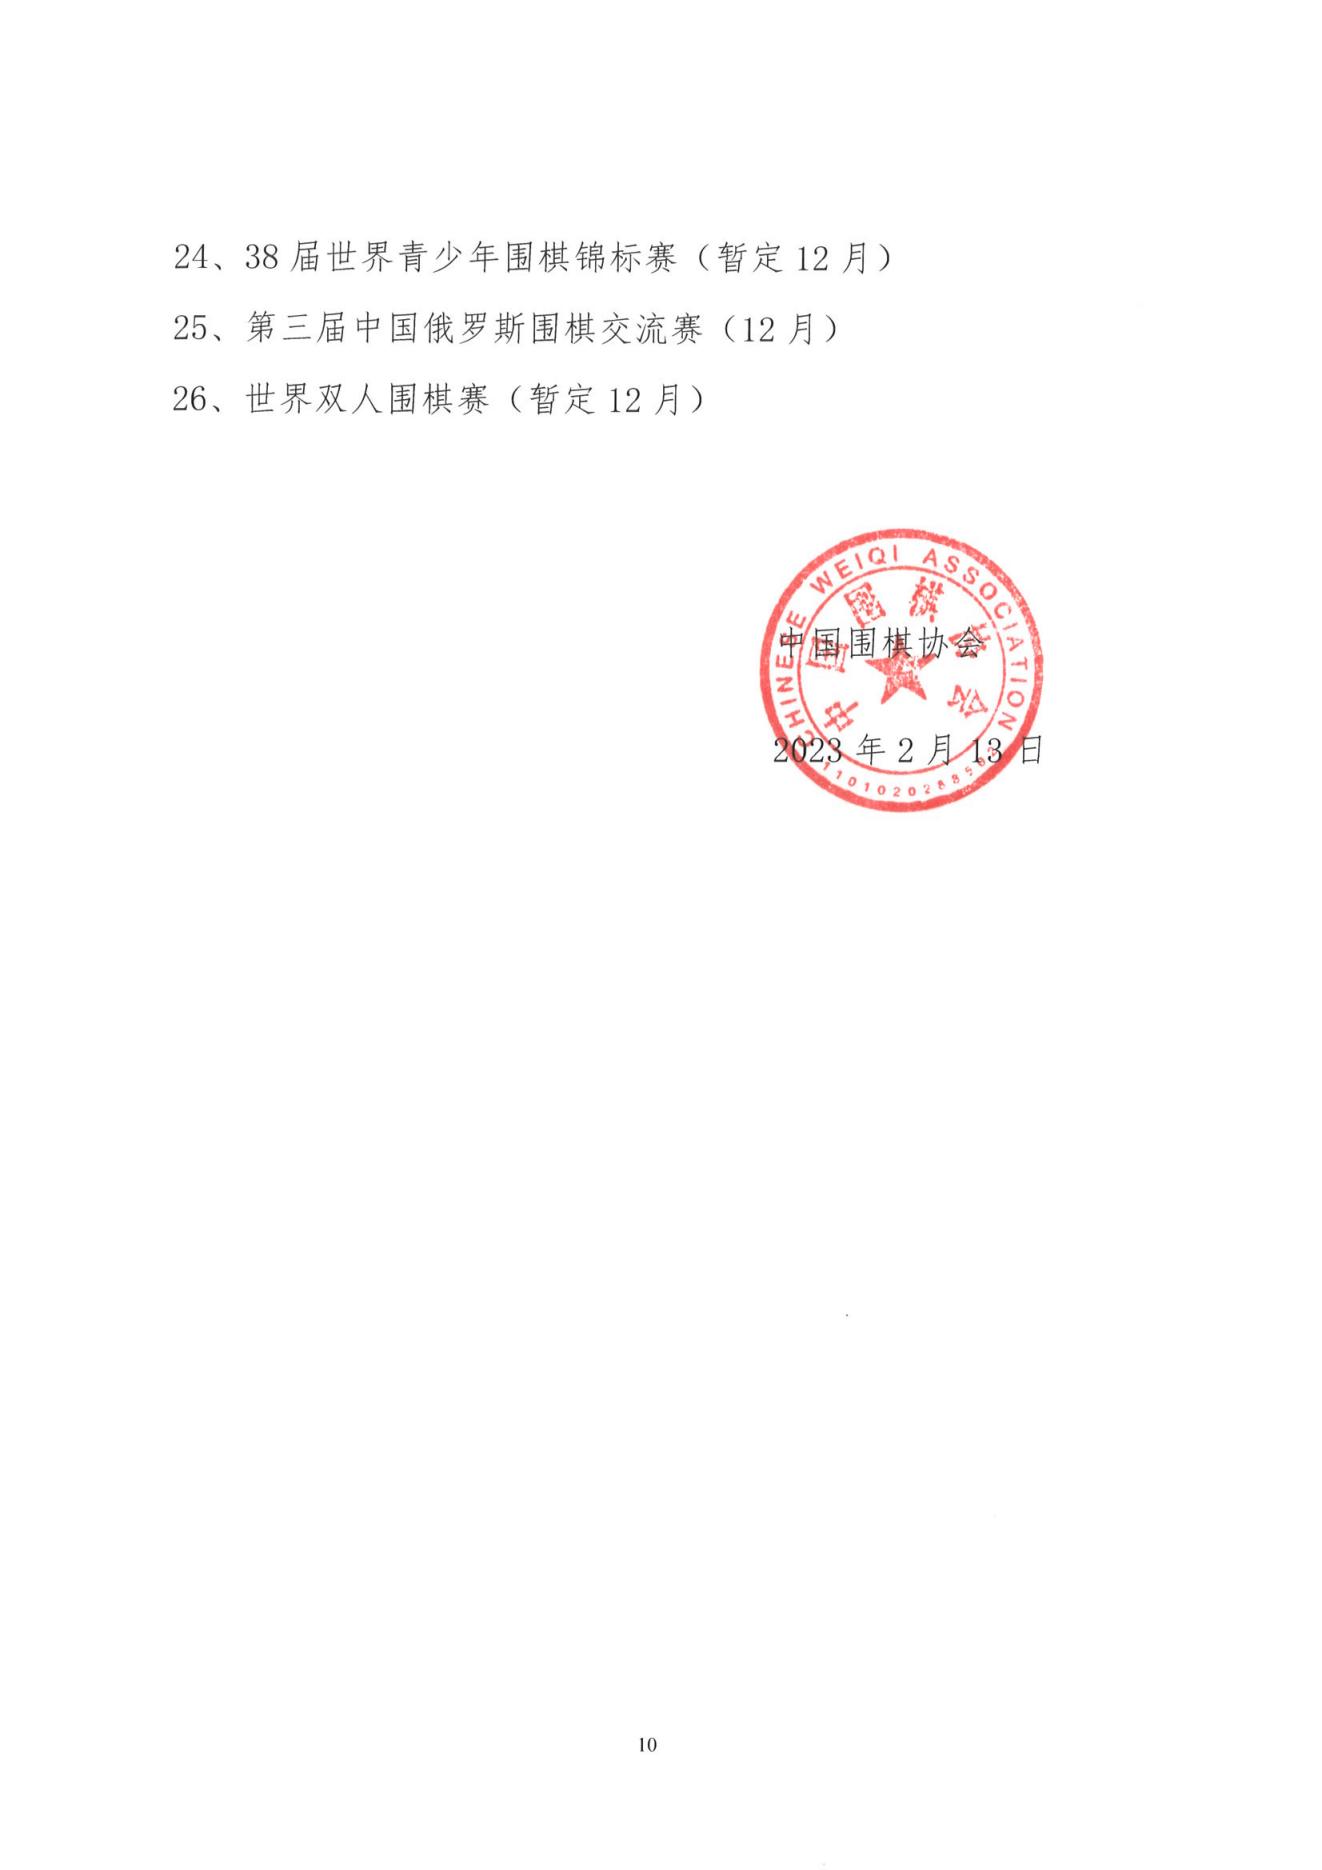 1_2023年中国围棋协会赛事计划项目.PDF_09.jpg